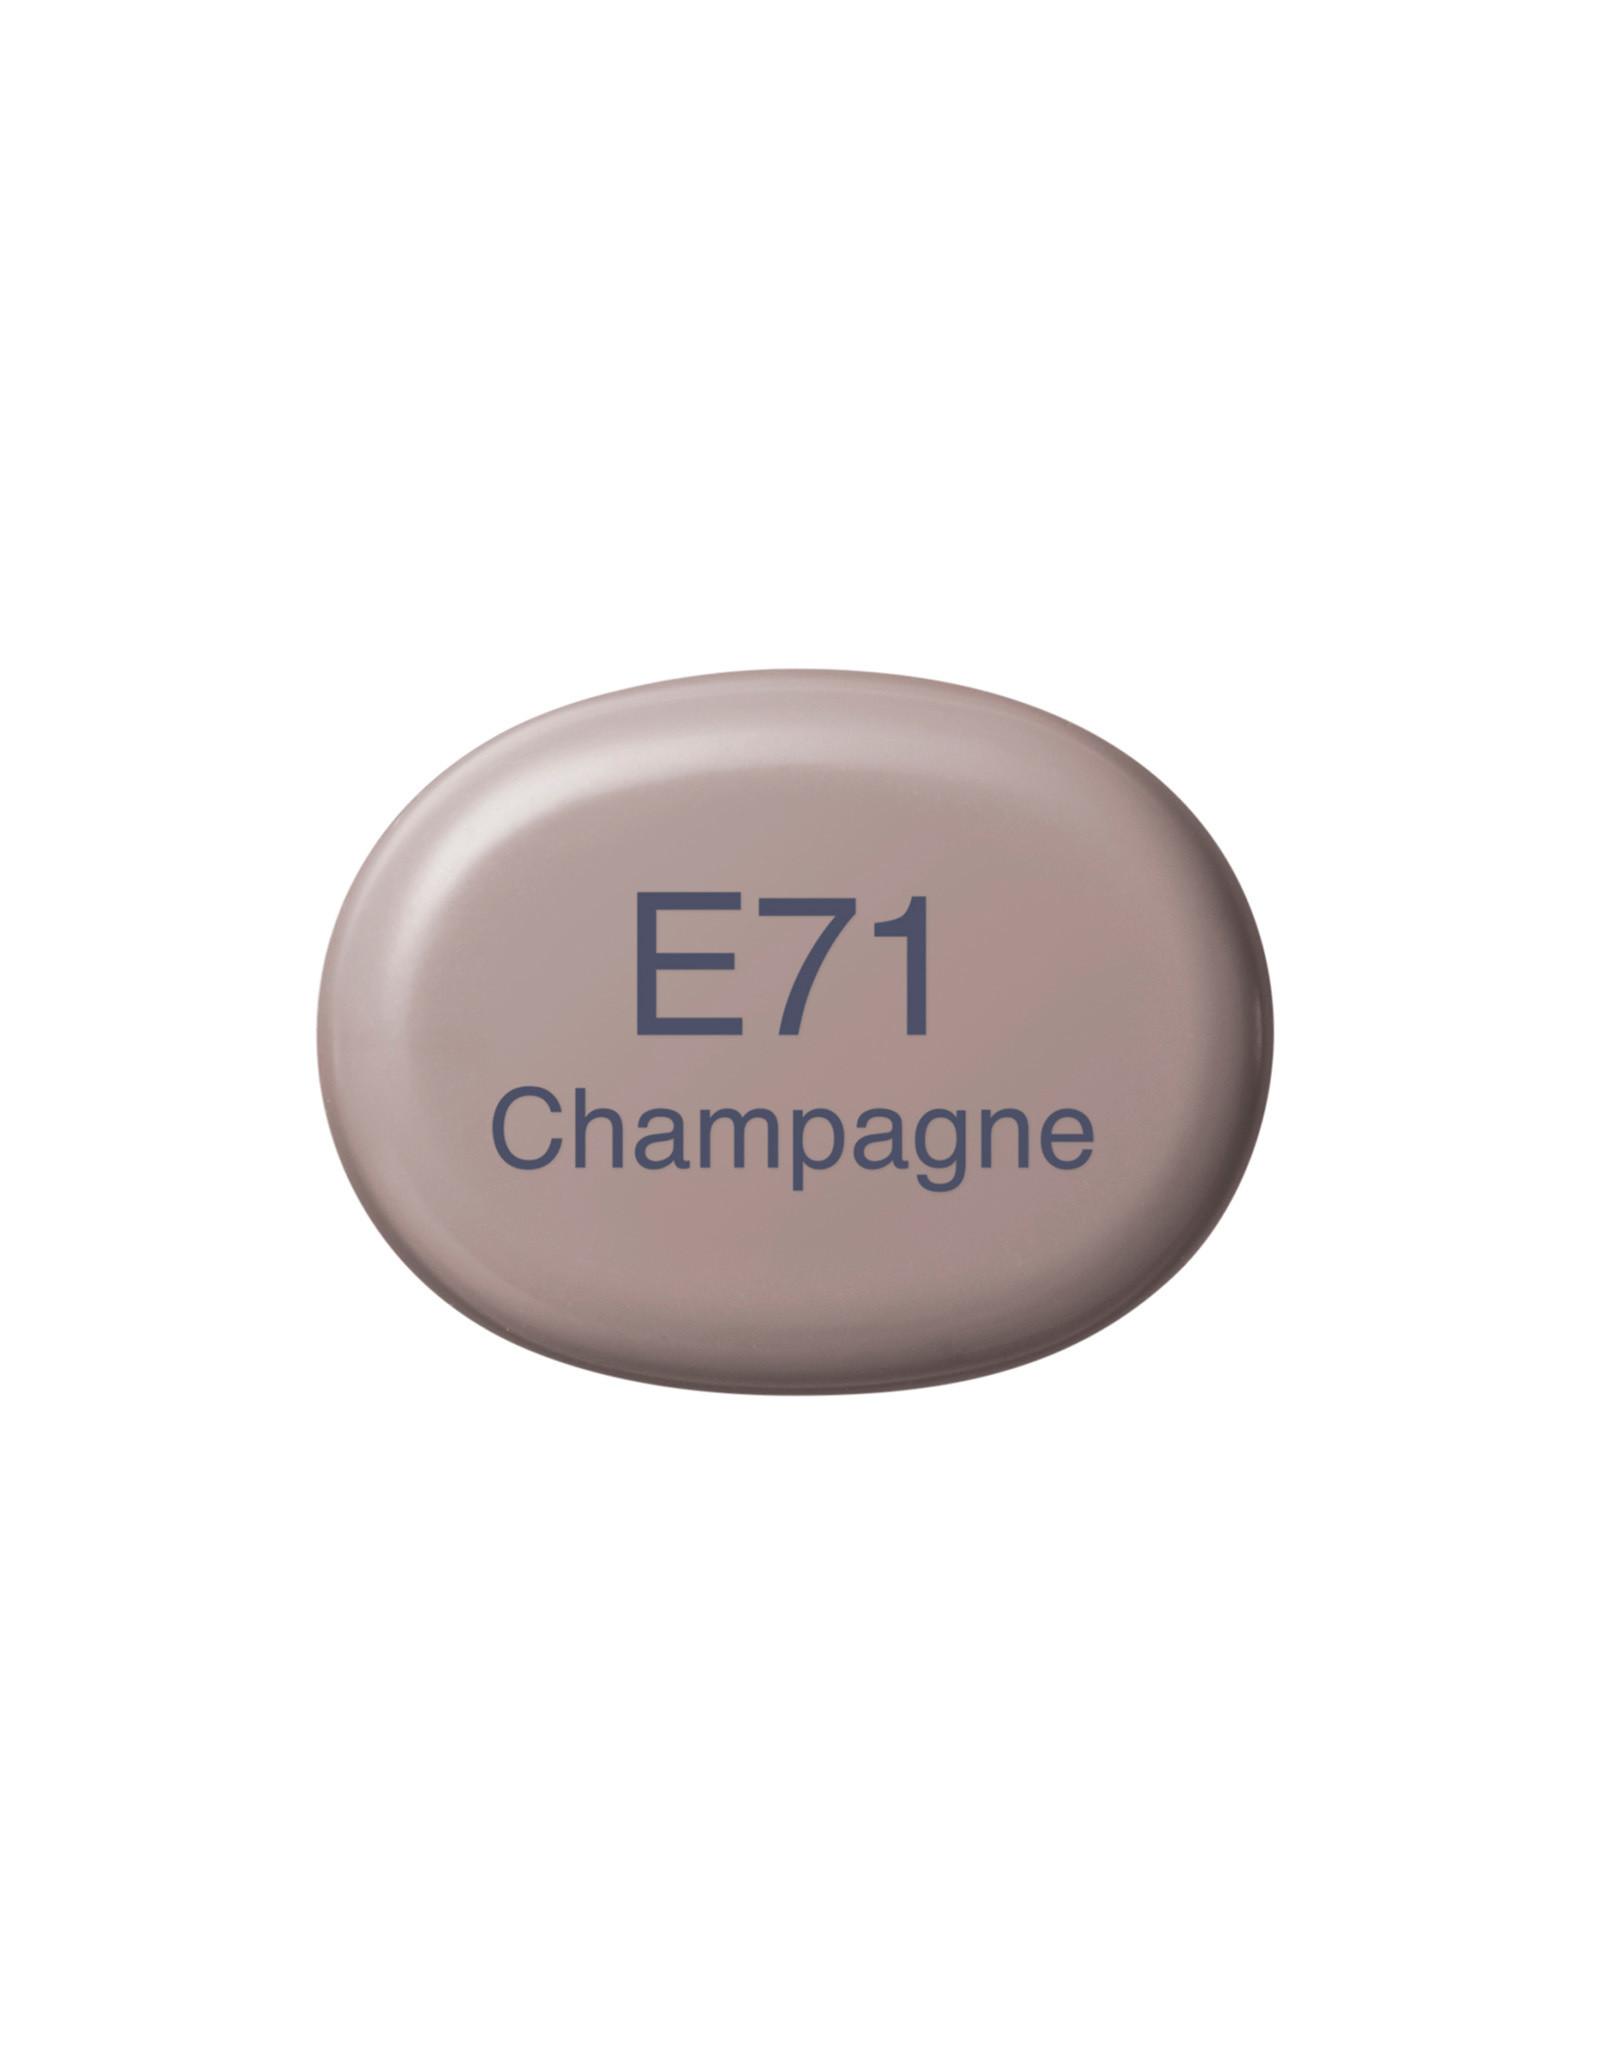 COPIC COPIC Sketch Marker E71 Champagne